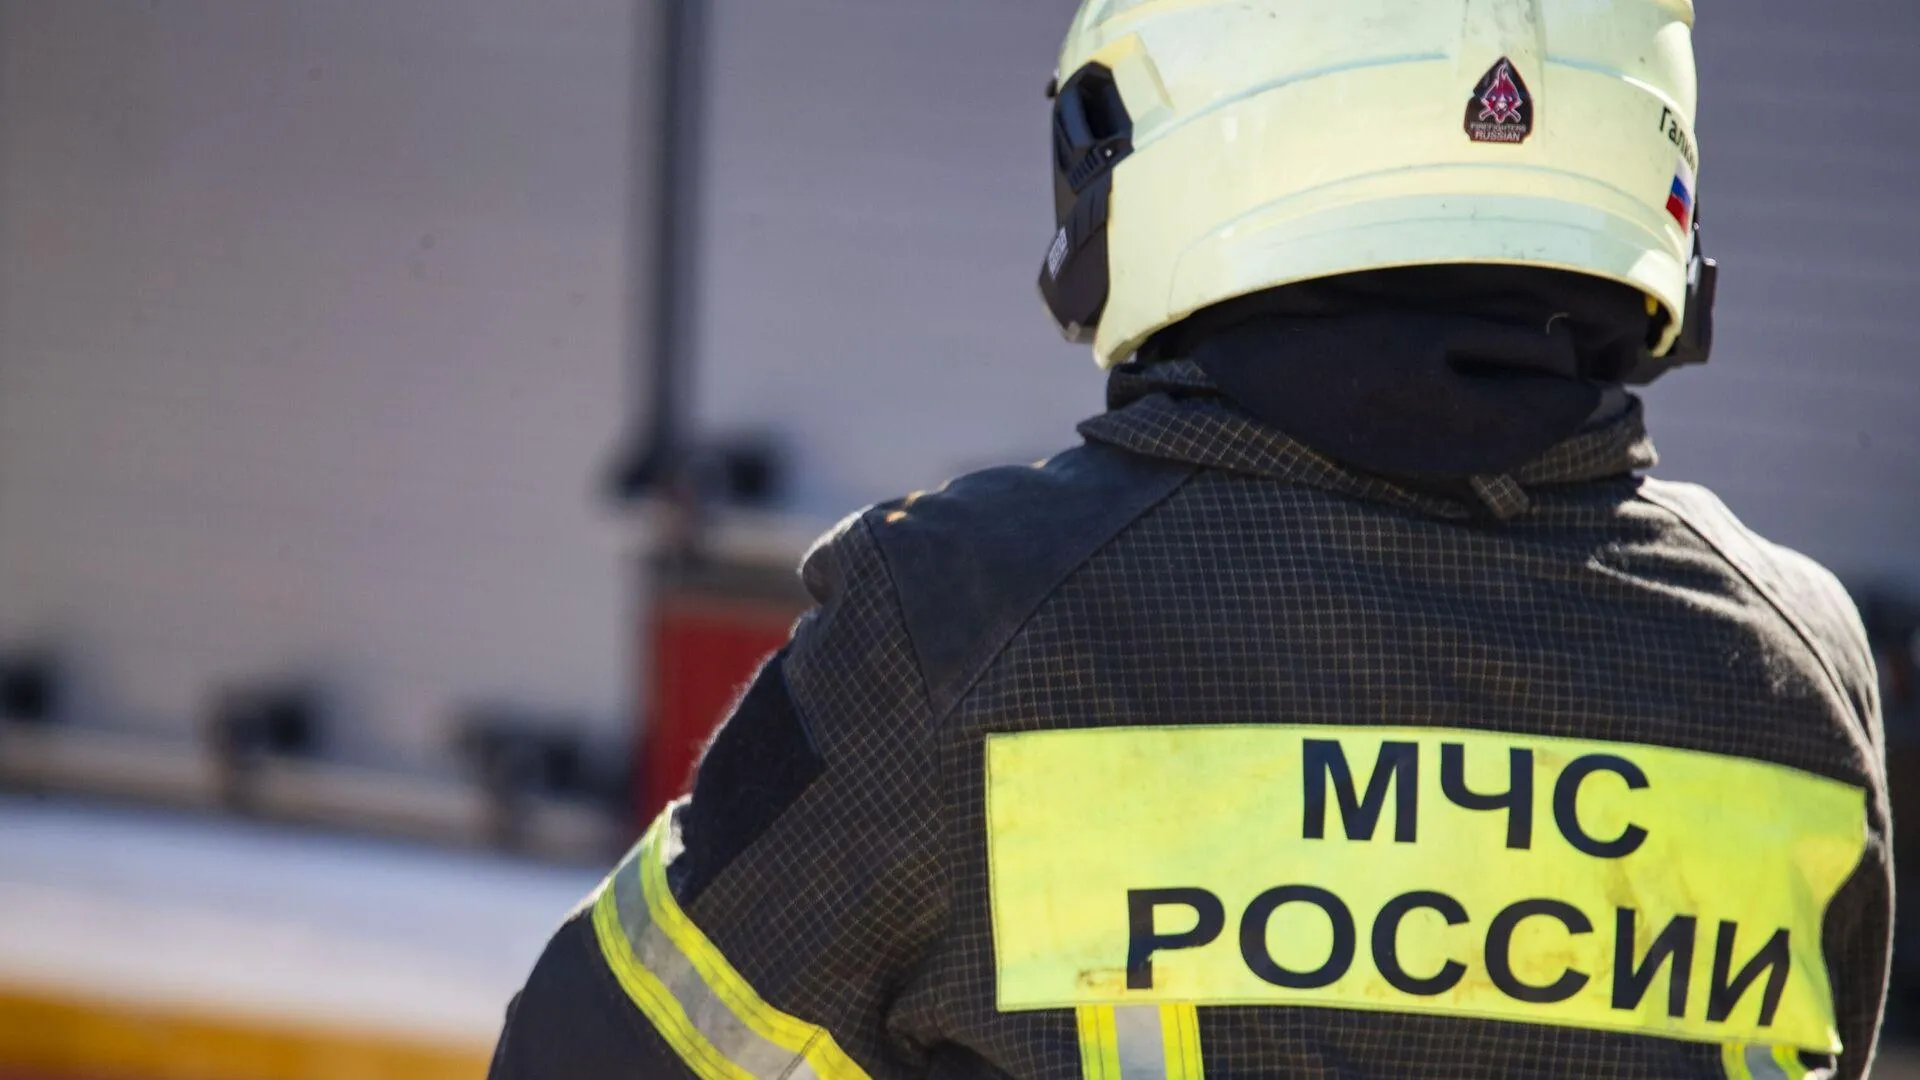 Московского пациента весом более 300 кг не смогли вынести на носилках